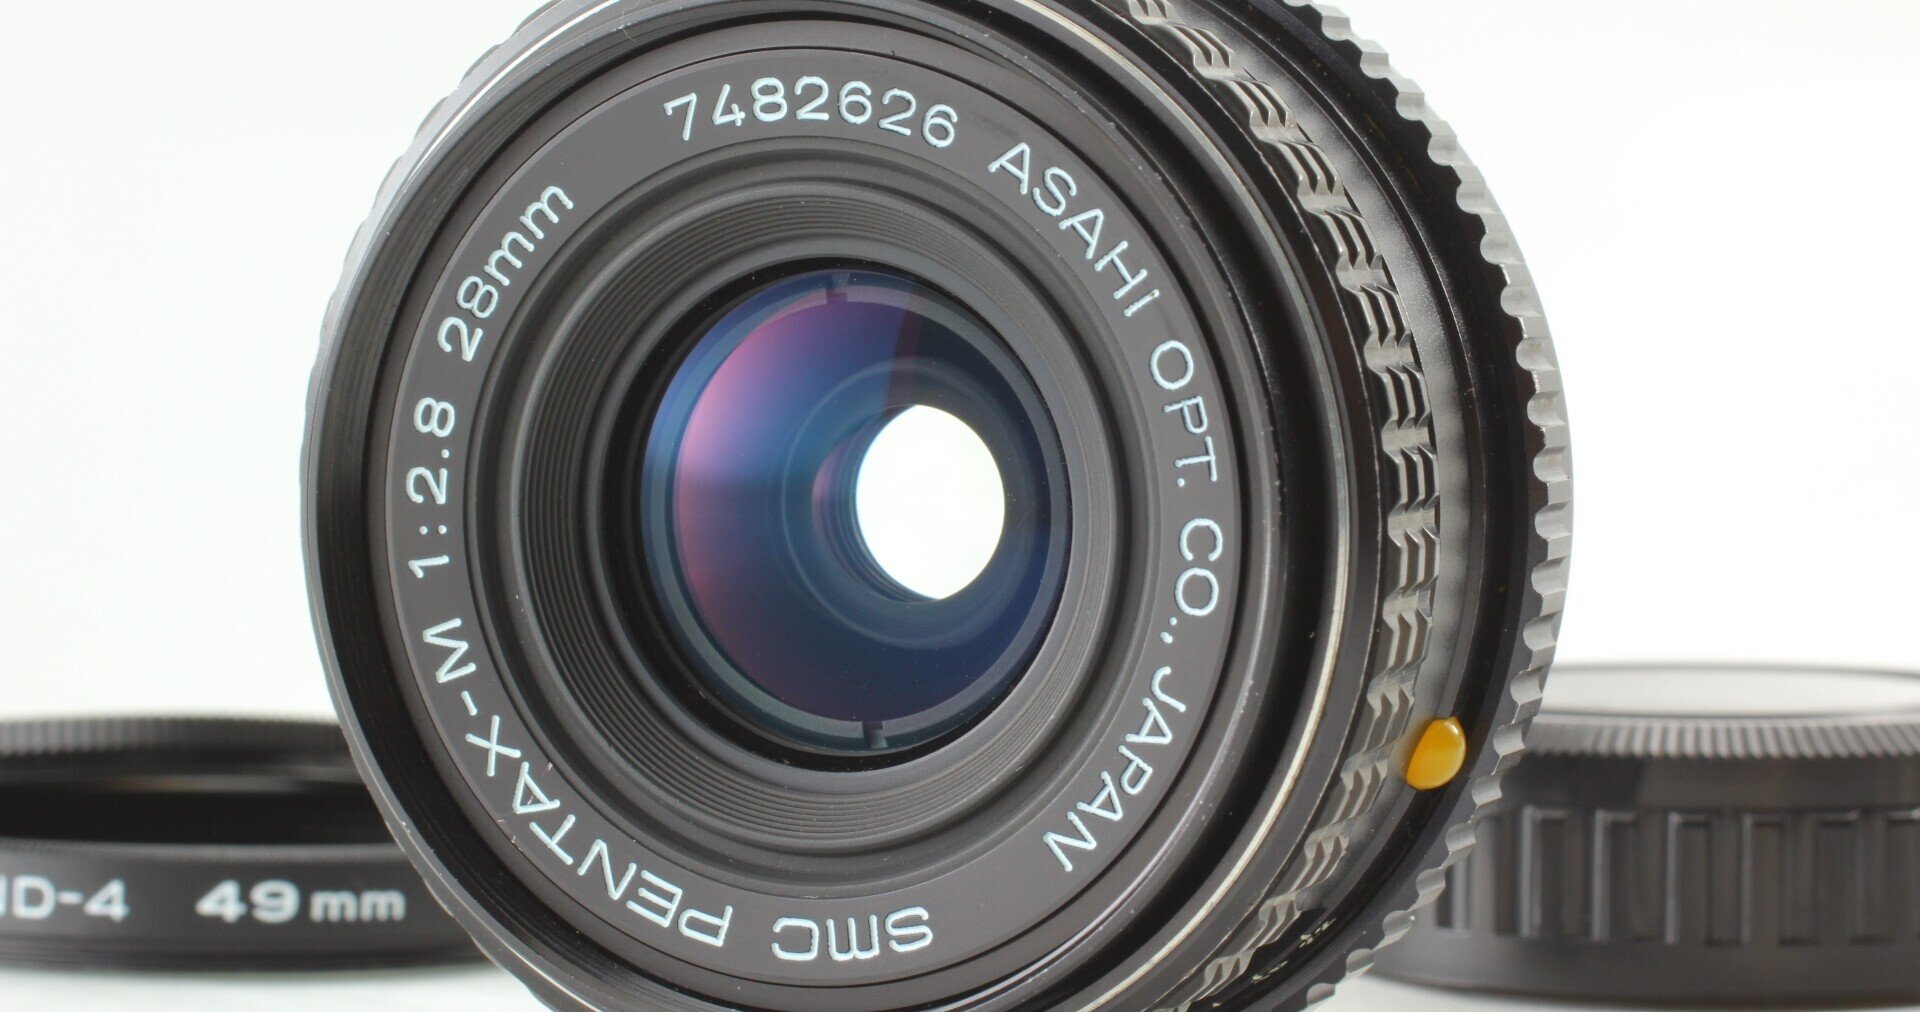 ペンタックス SMC PENTAX-M 28mm f2.8